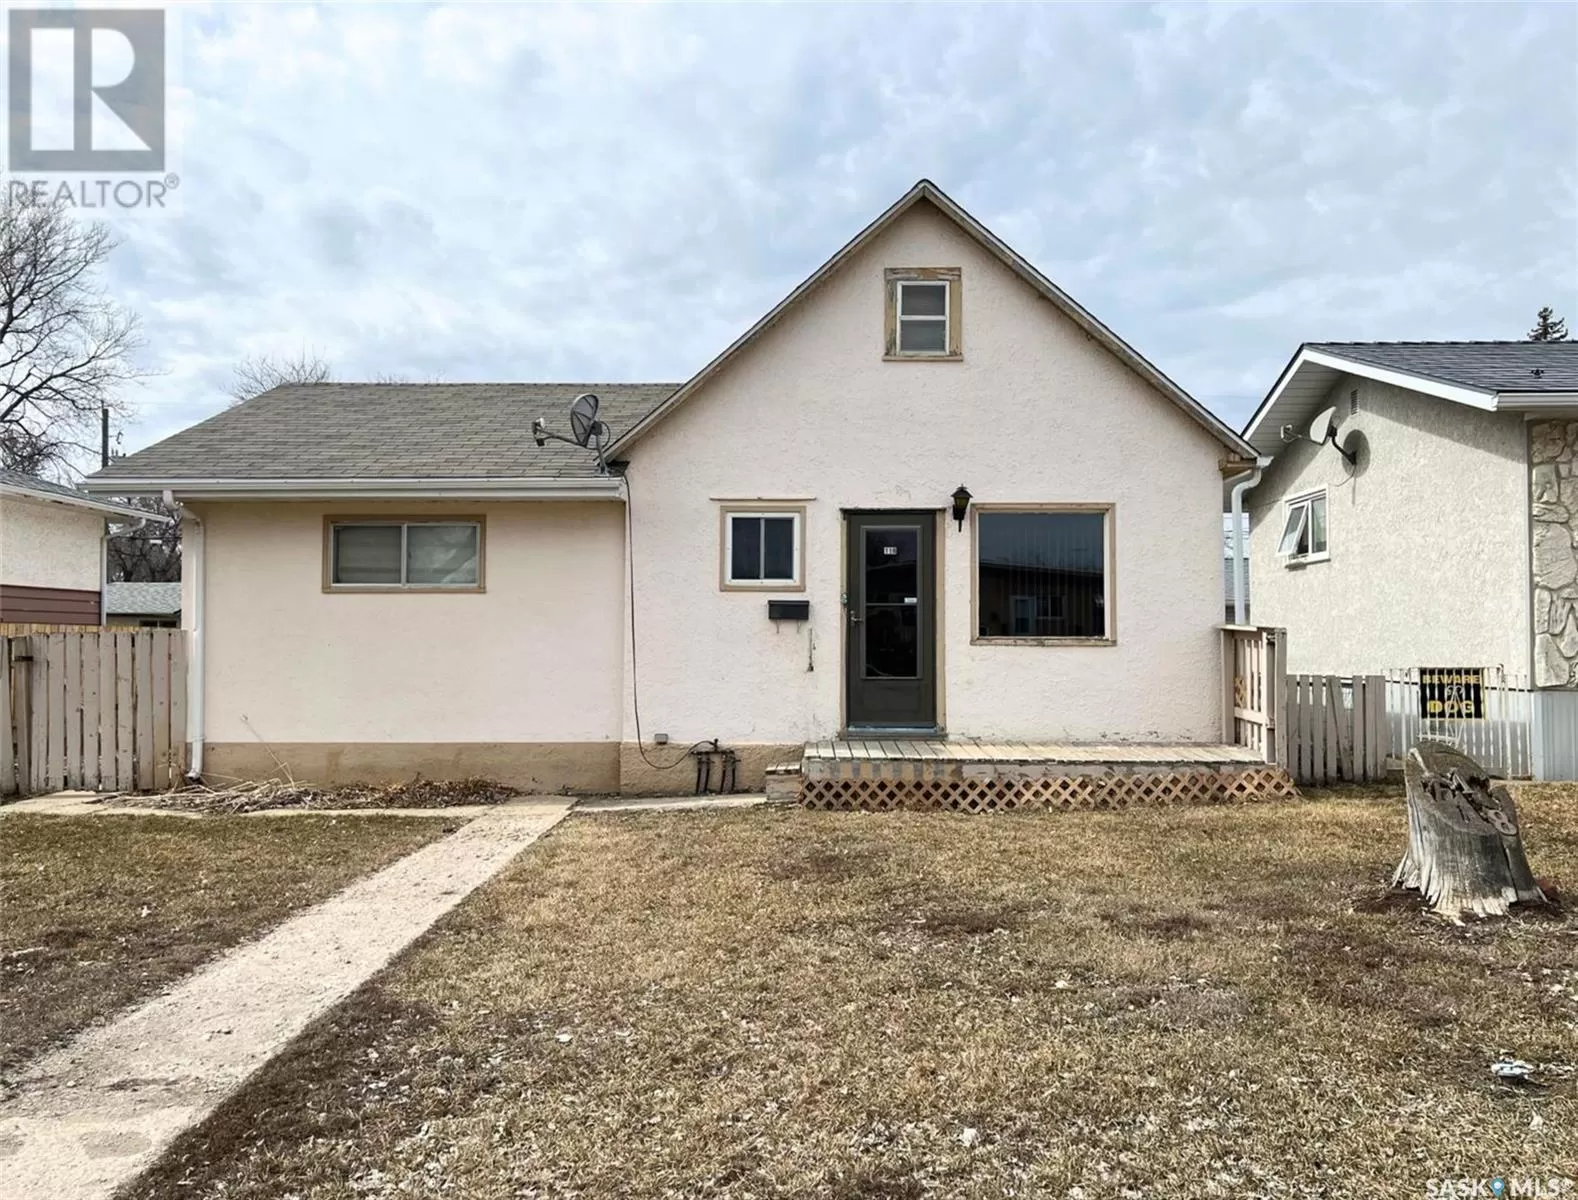 House for rent: 118 5th Avenue Se, Swift Current, Saskatchewan S9H 3M7